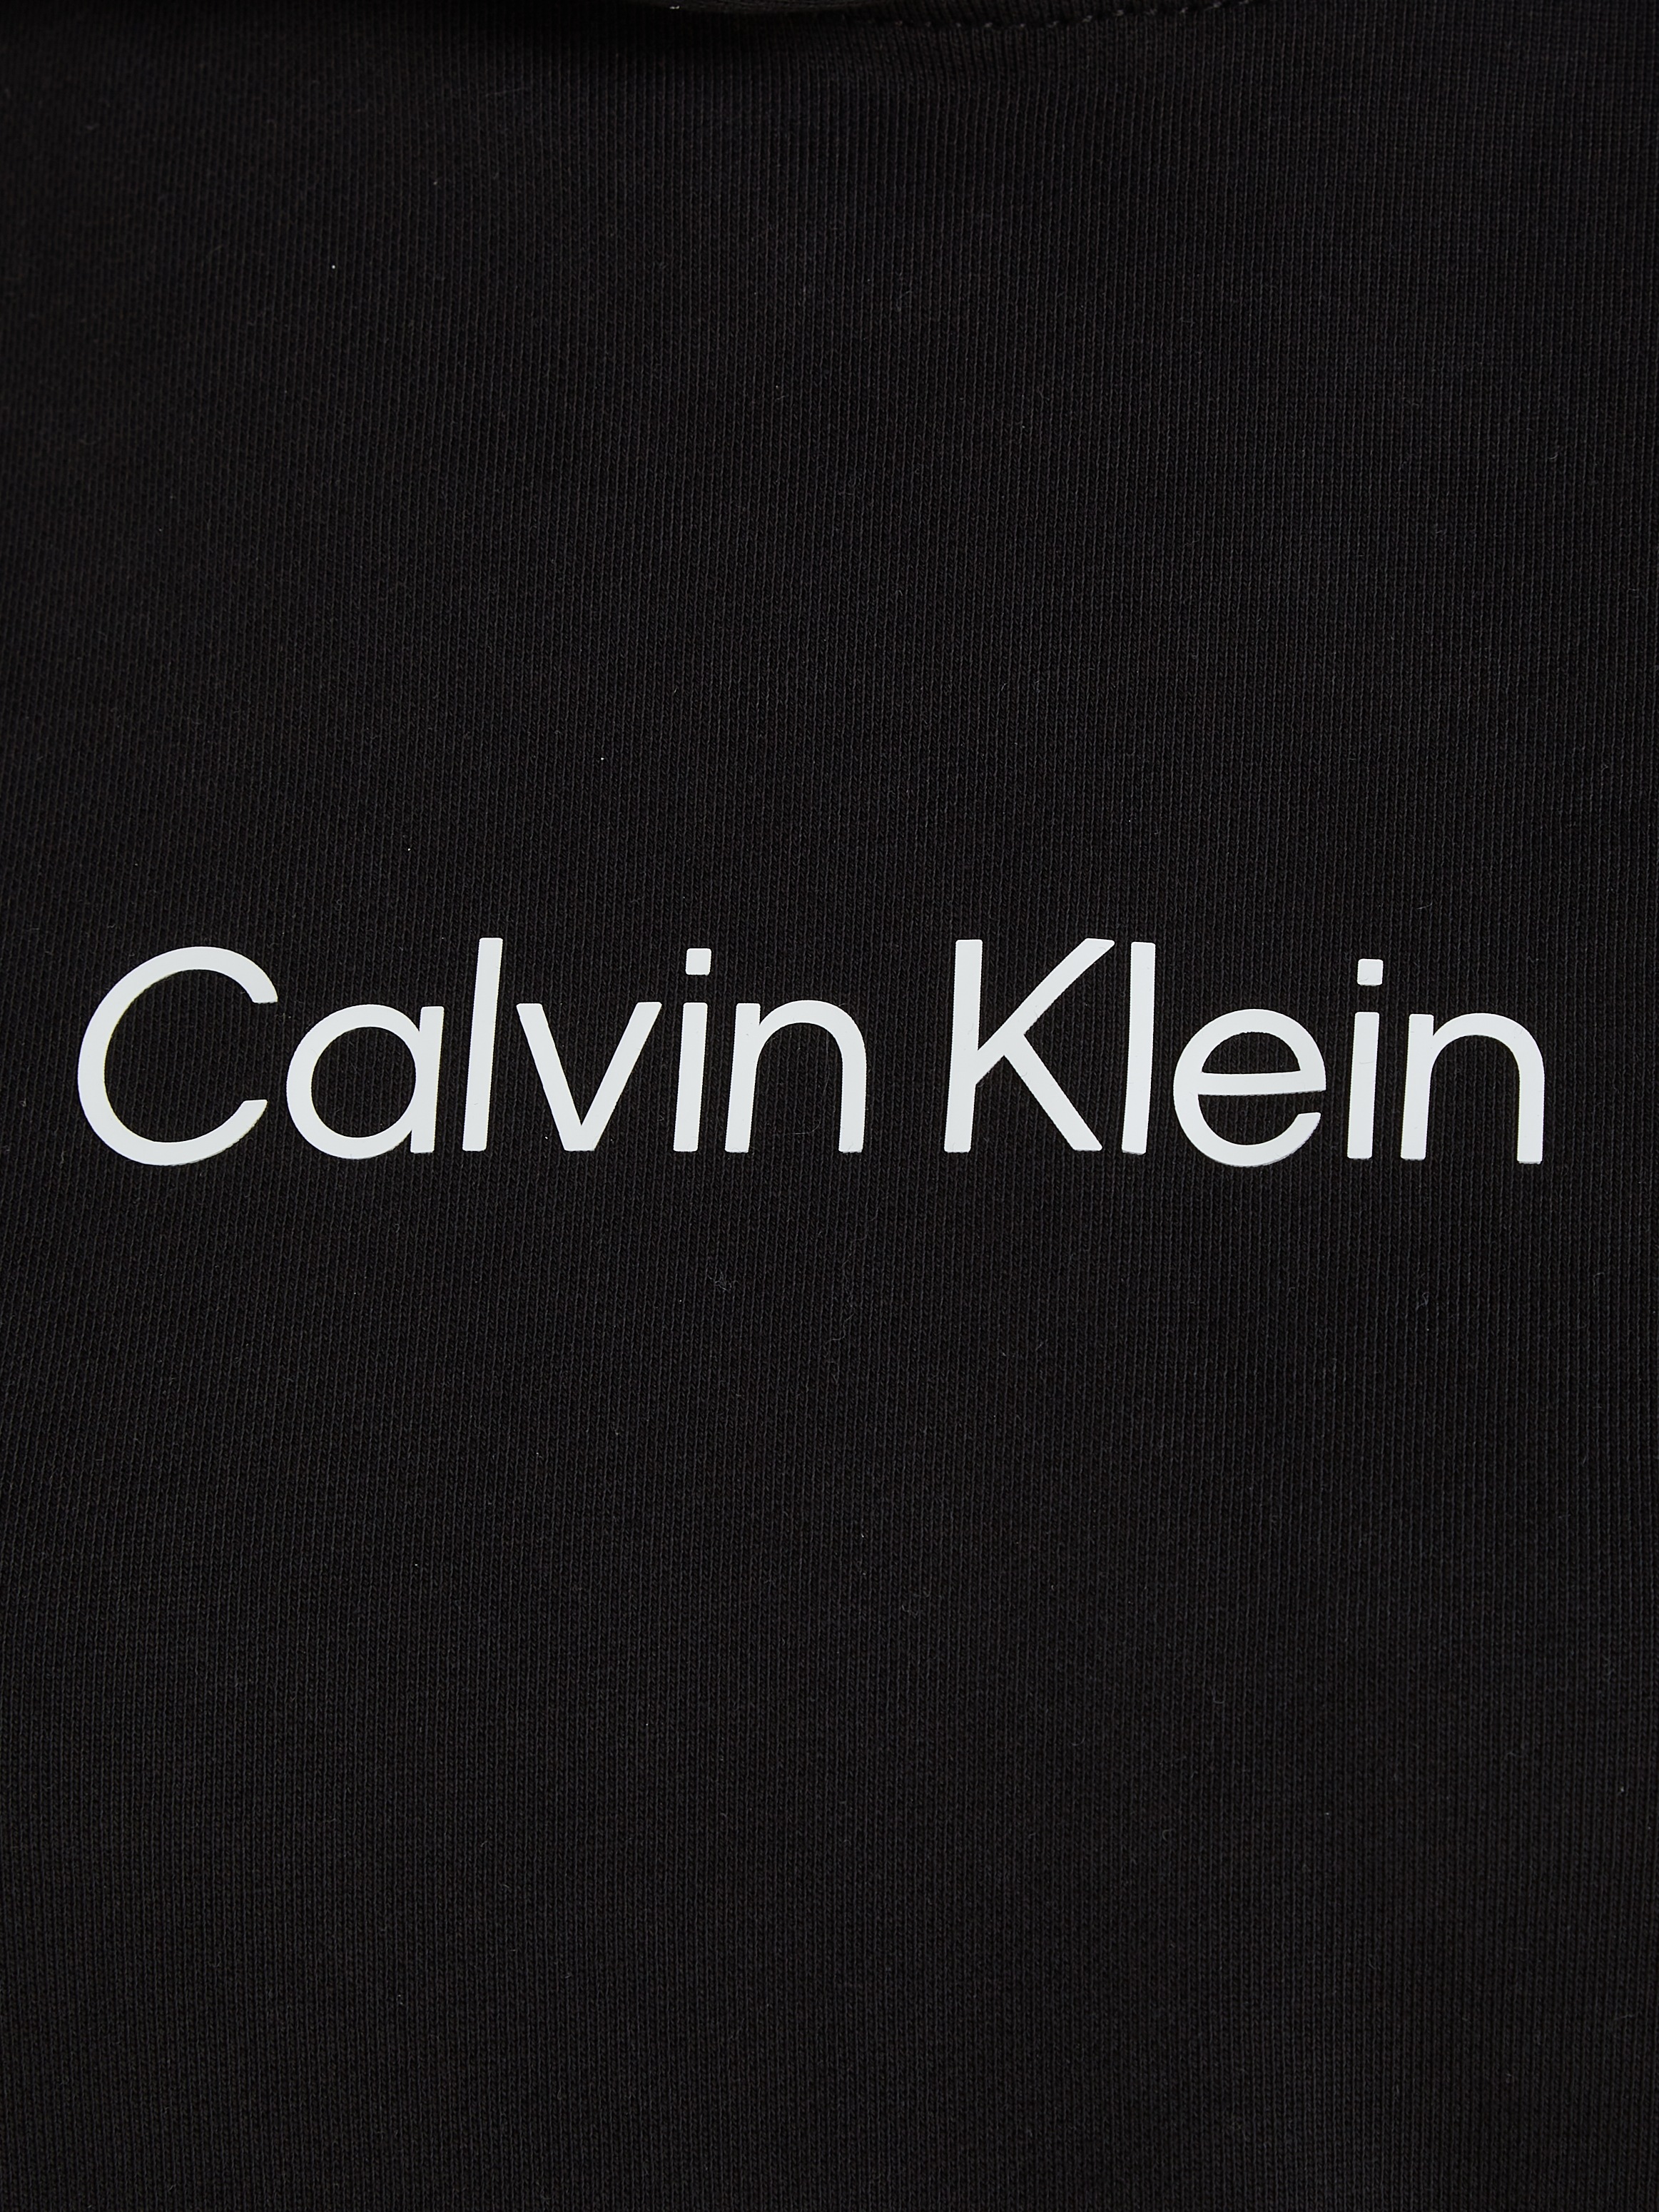 Calvin Klein Kapuzensweatshirt »HERO LOGO HOODY«, mit Calvin Klein Logo auf der Brust